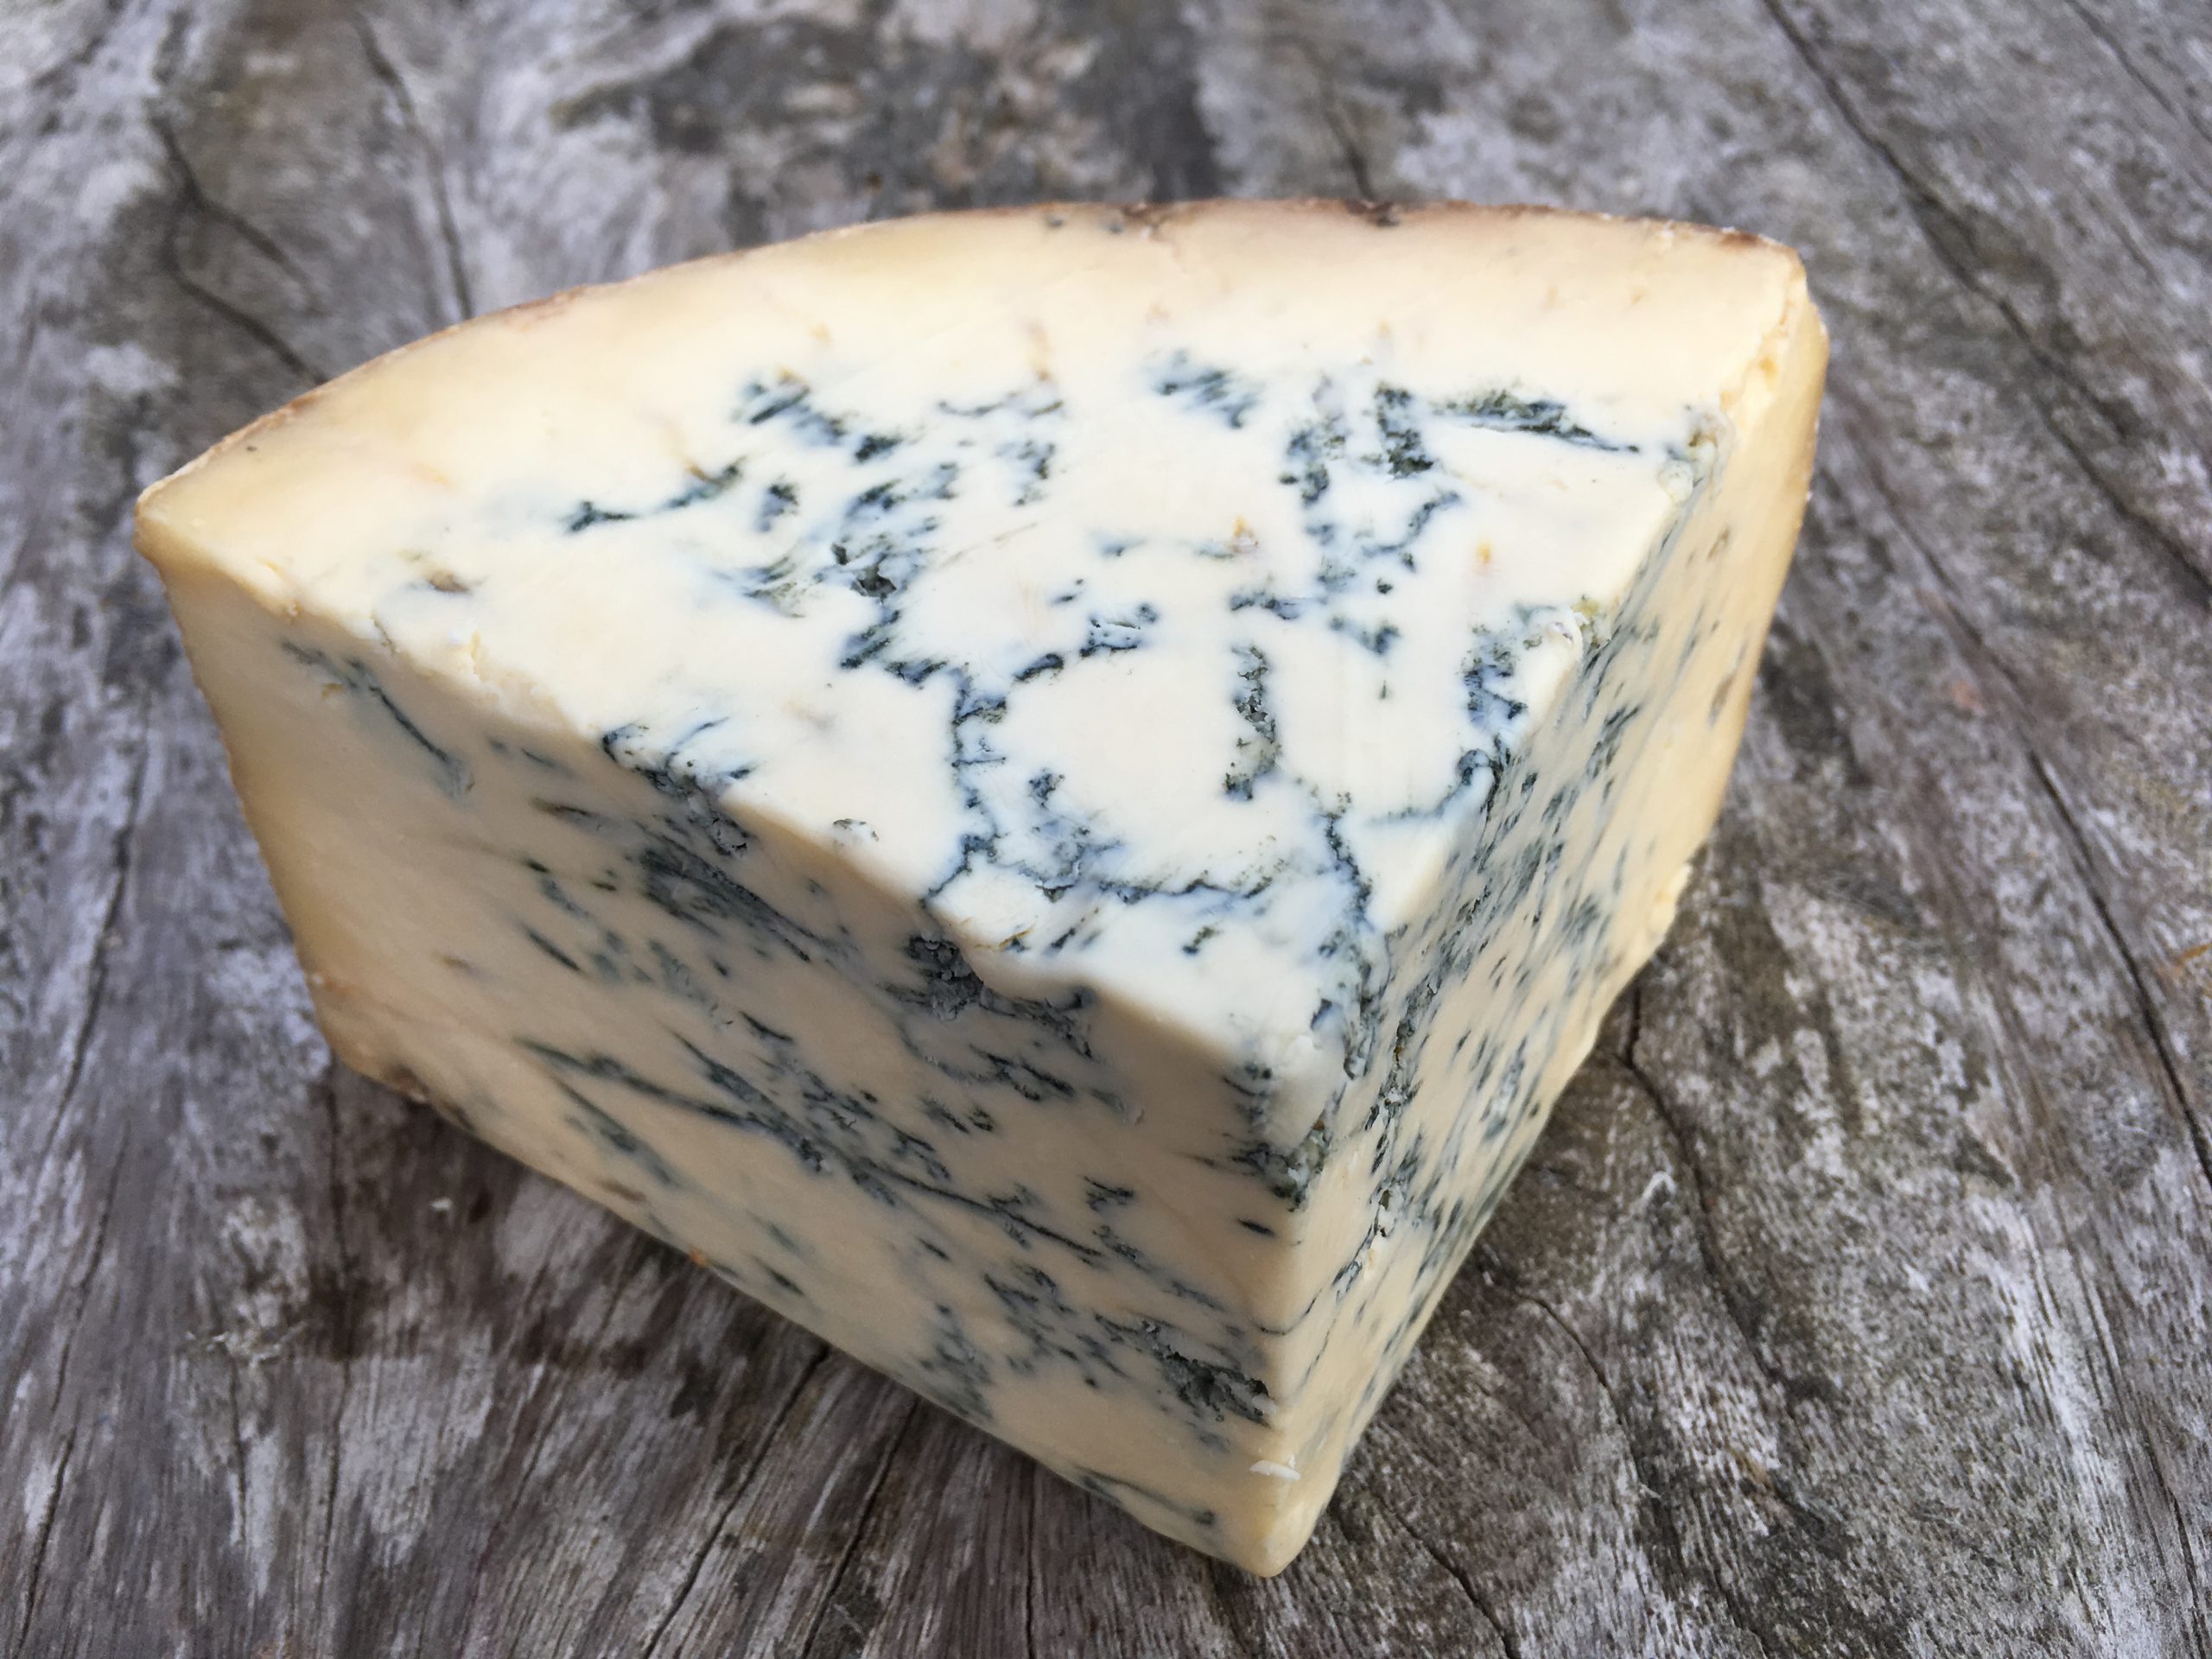 Colston Bassett Blue Stilton Cheese